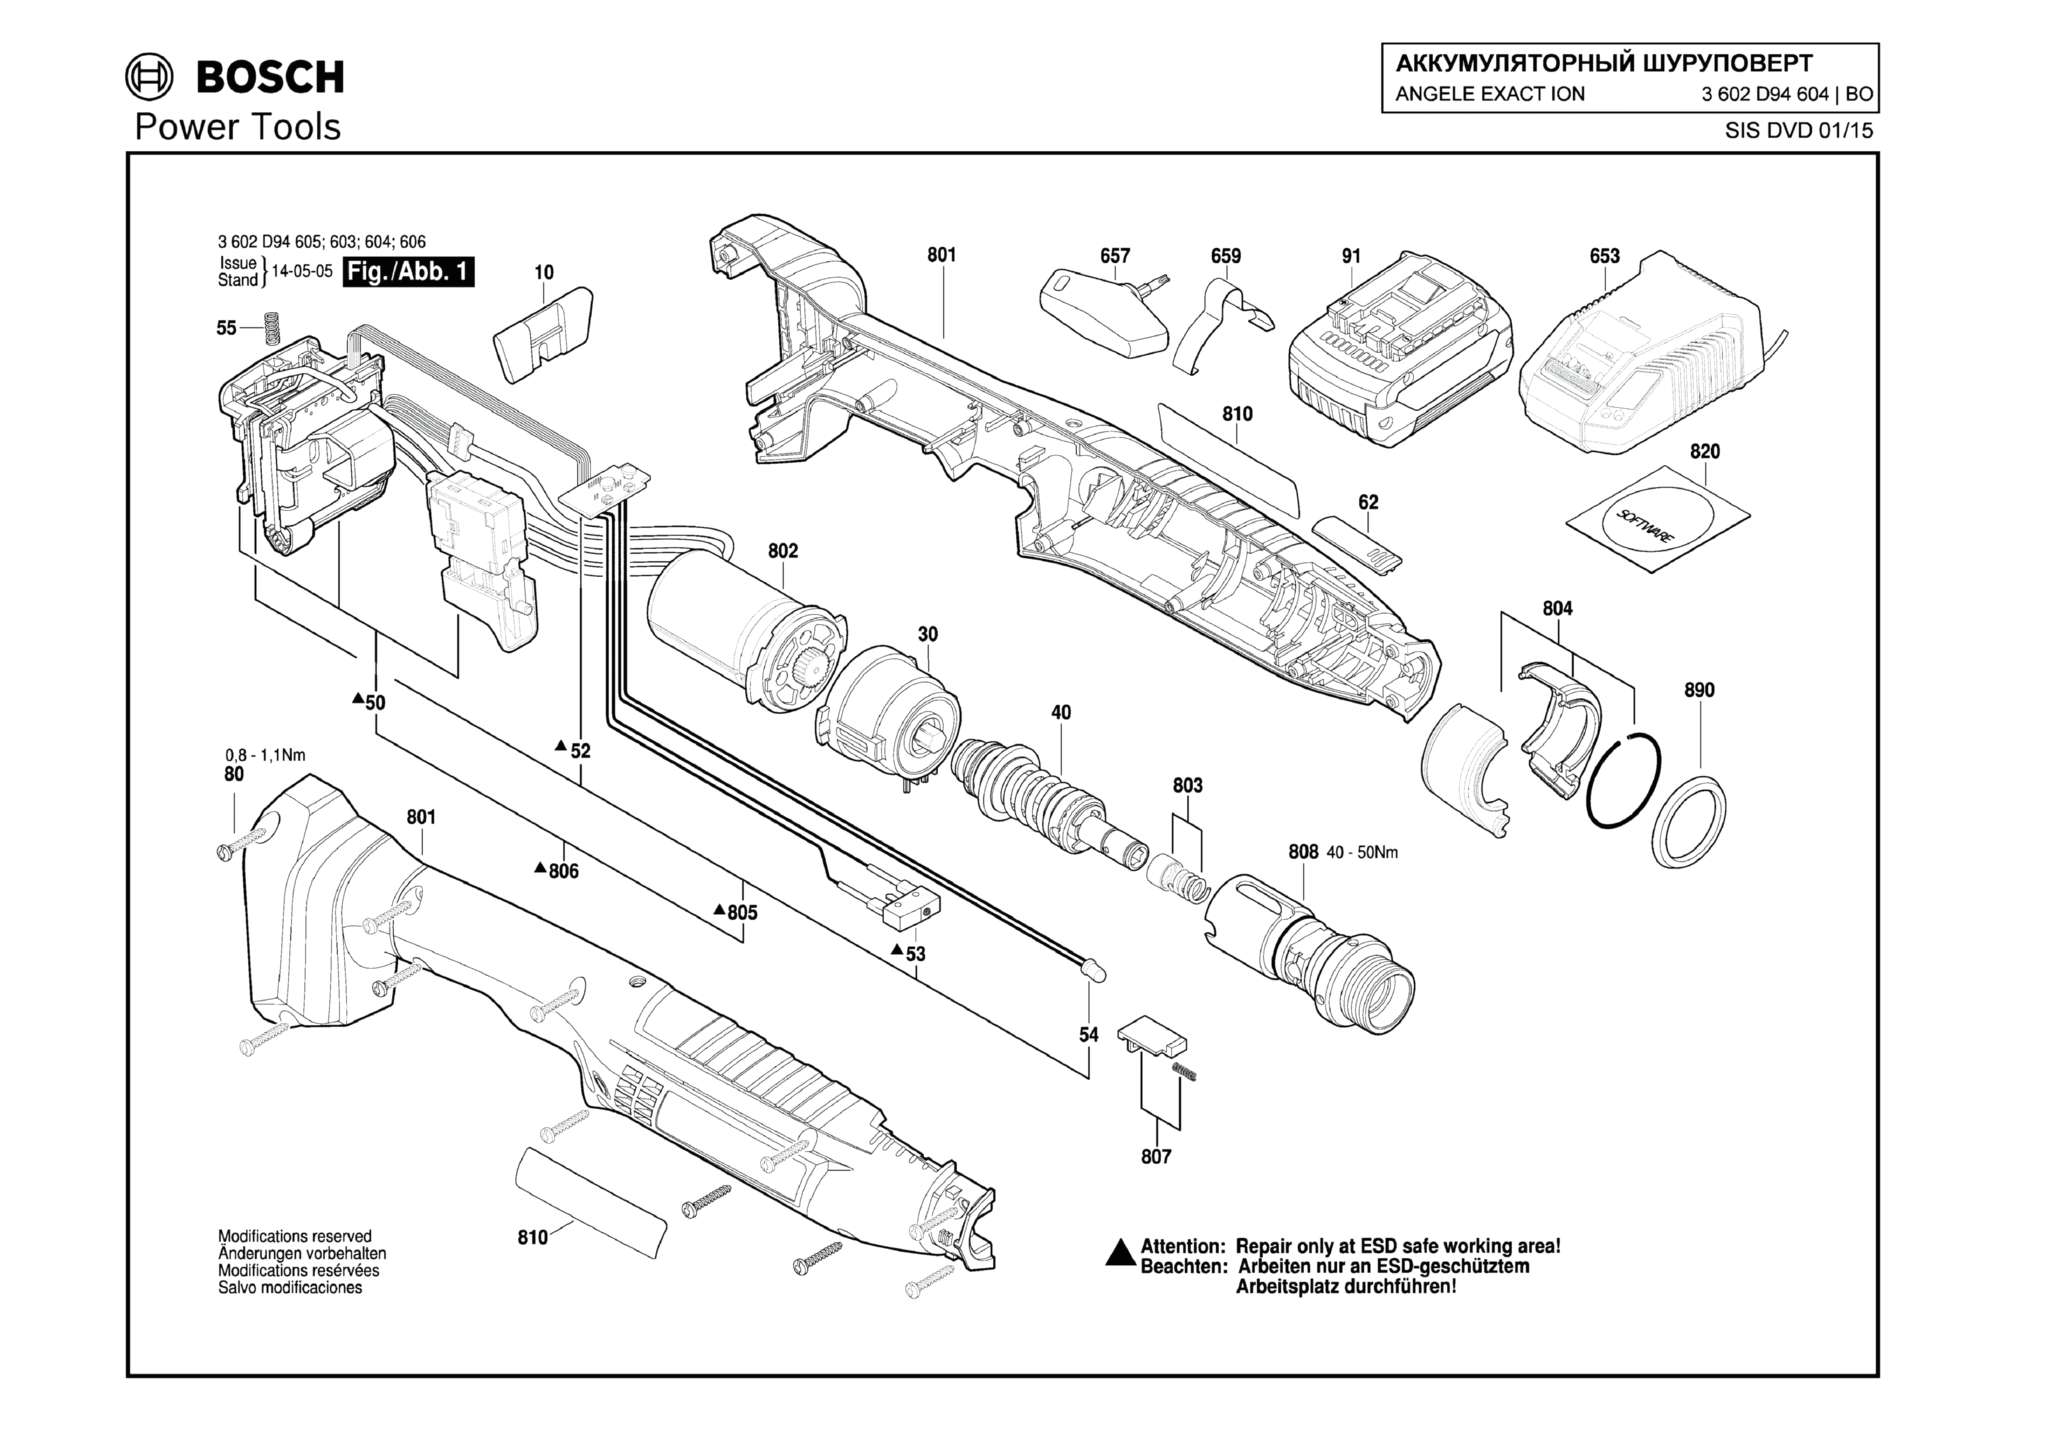 Запчасти, схема и деталировка Bosch ANGELE EXACT ION 40-220 (ТИП 3602D94604)